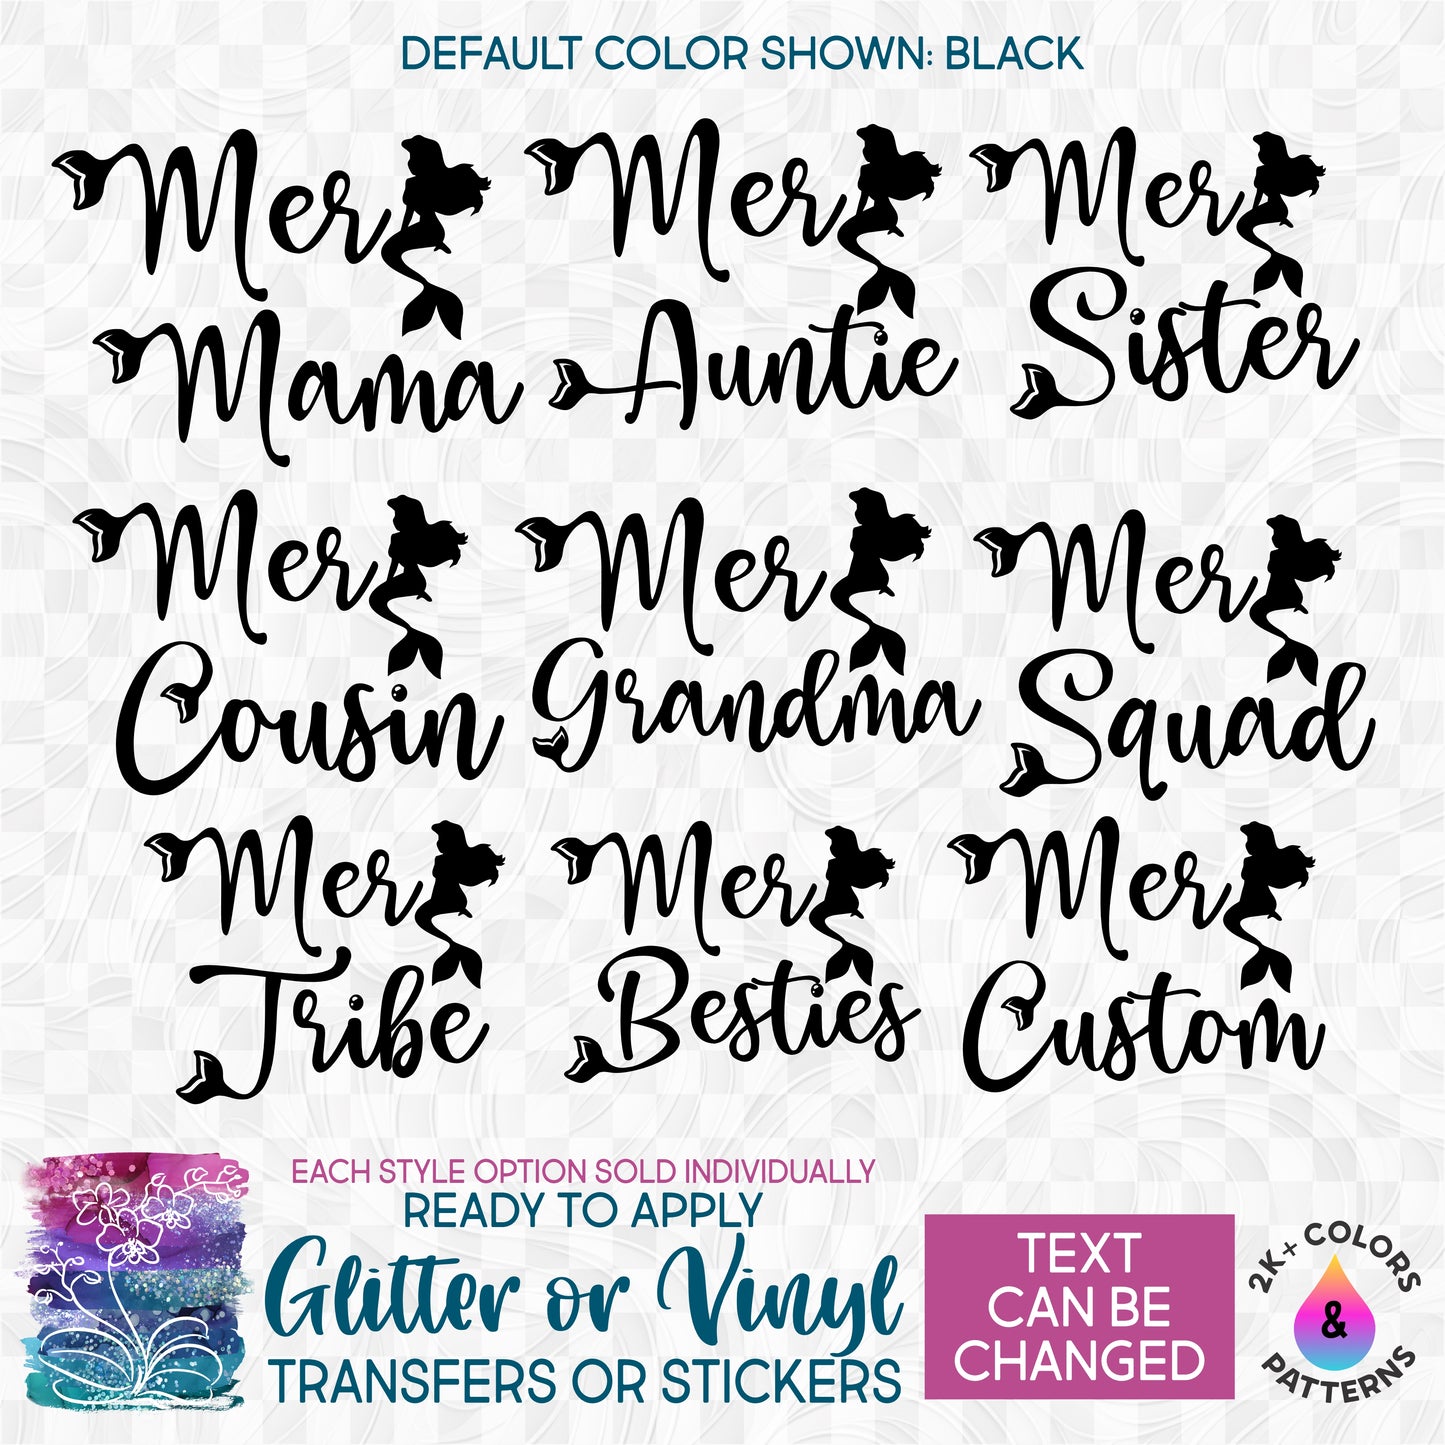 (s198-8F) Mer Mom Girl Mermaid Custom Text Glitter or Vinyl Iron-On Transfer or Sticker